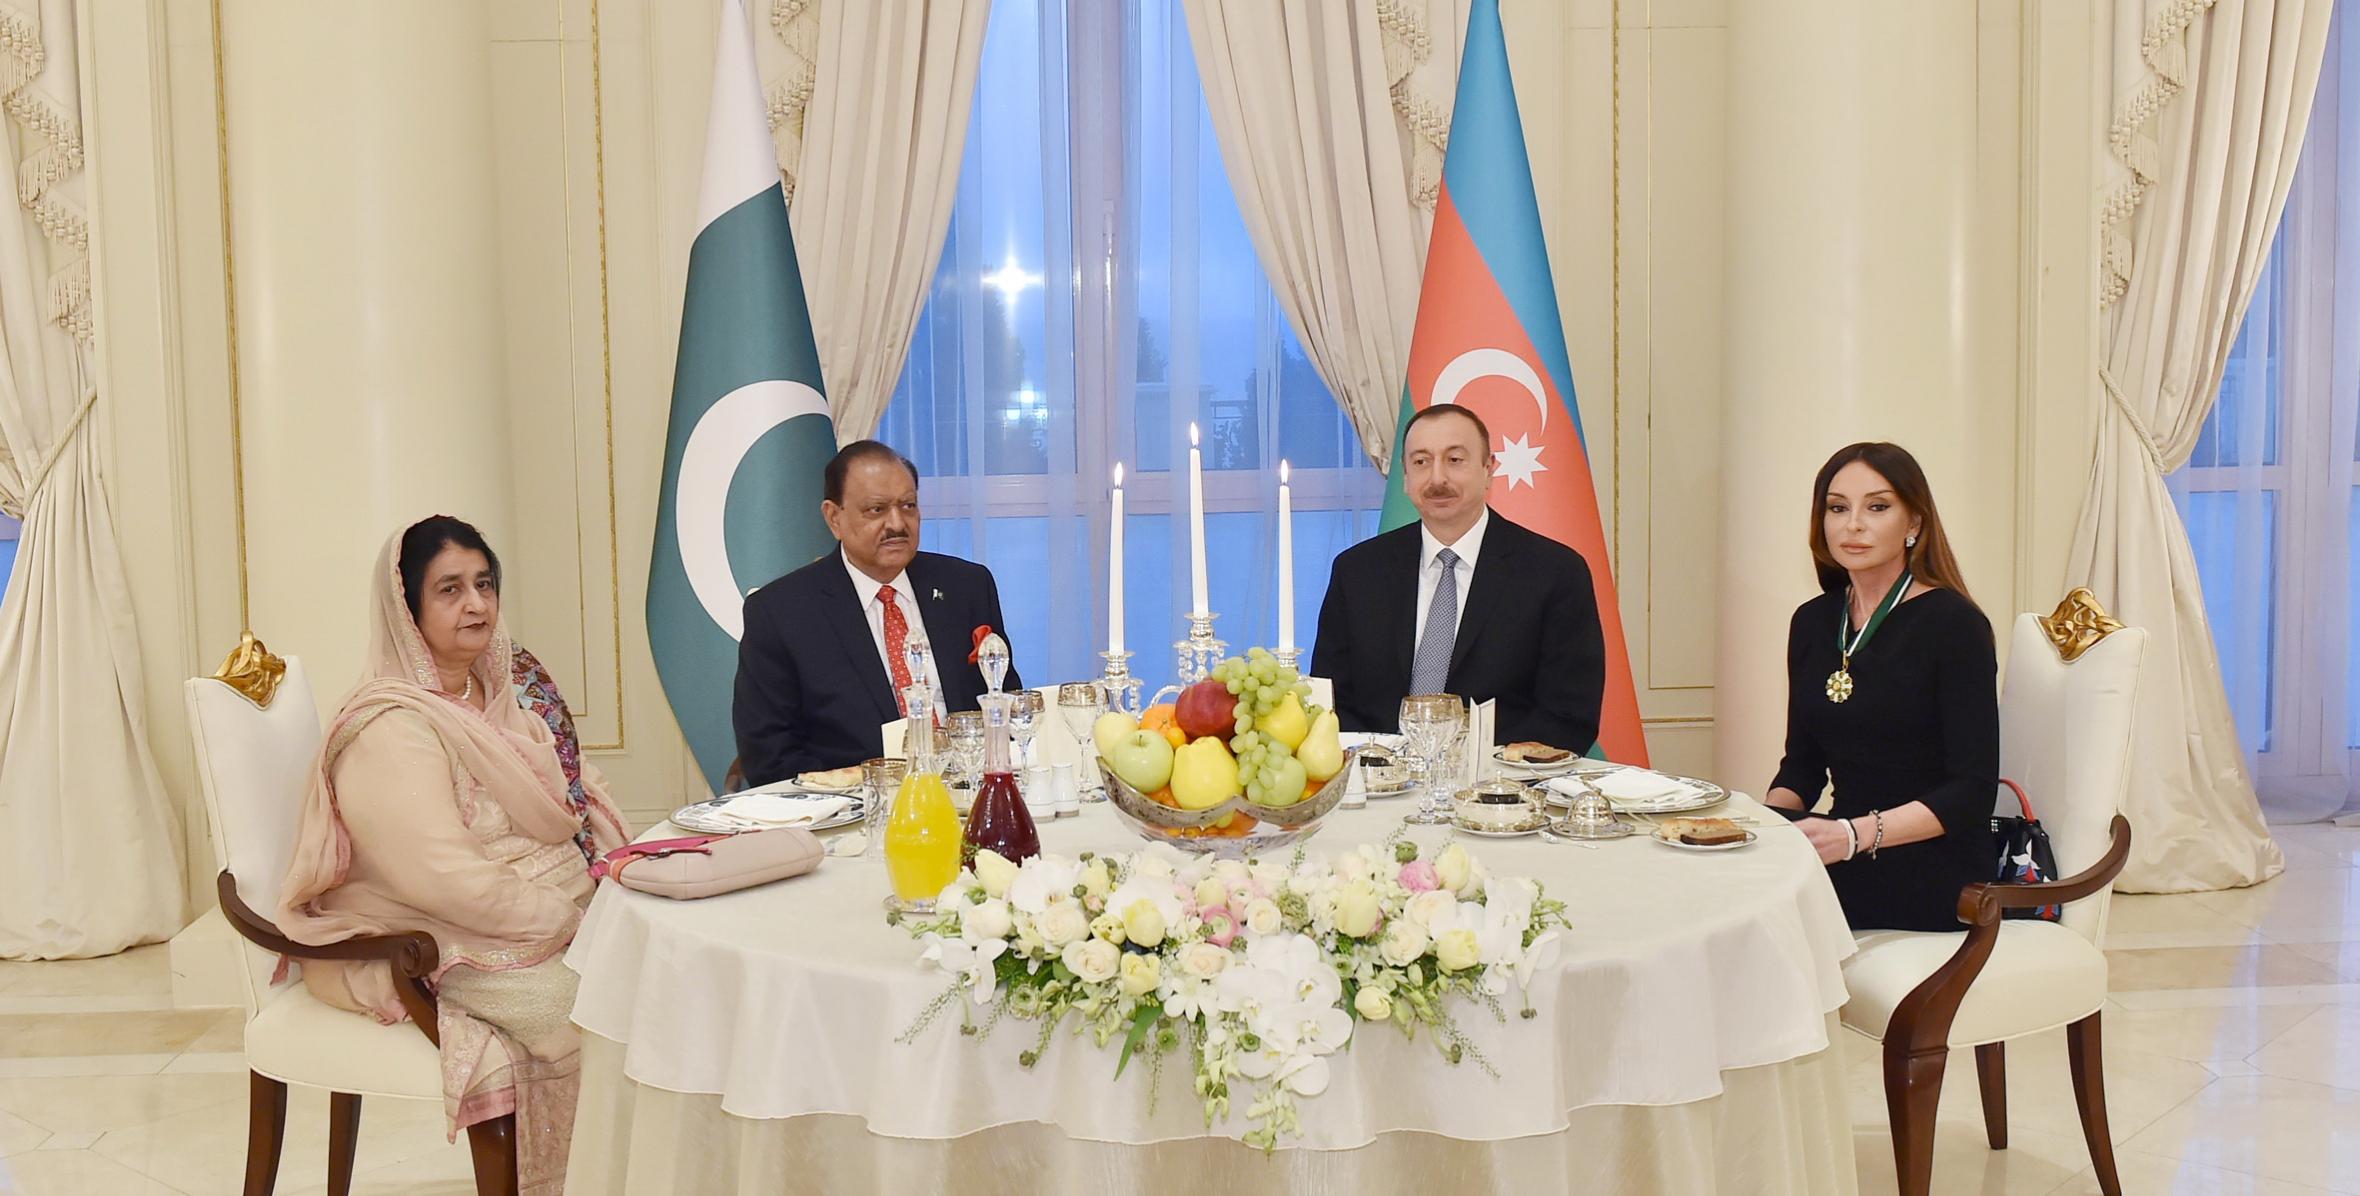 От имени Ильхама Алиева был устроен прием в честь Президента Пакистана Мамнуна Хусейна